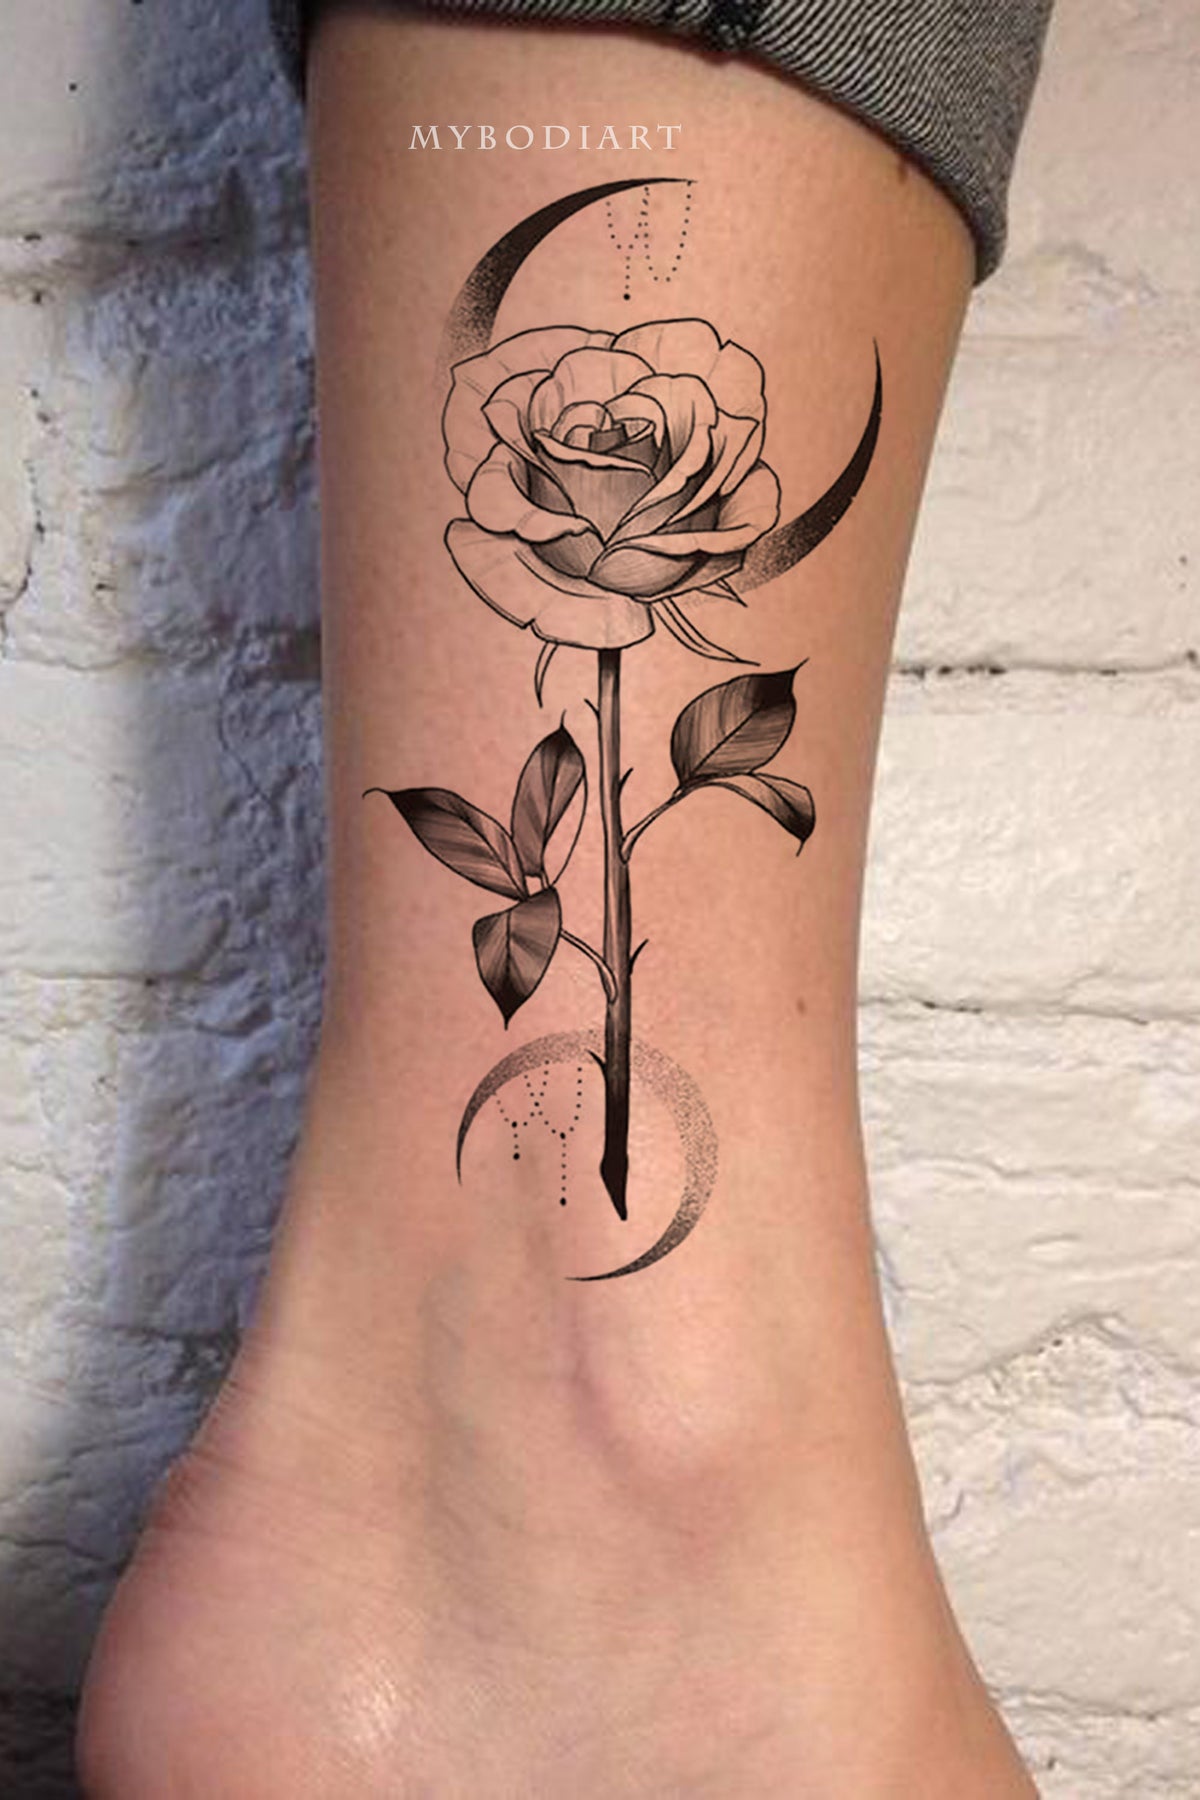 Sun-design-ankle-tattoo by NeckBoneInkTattoo on DeviantArt